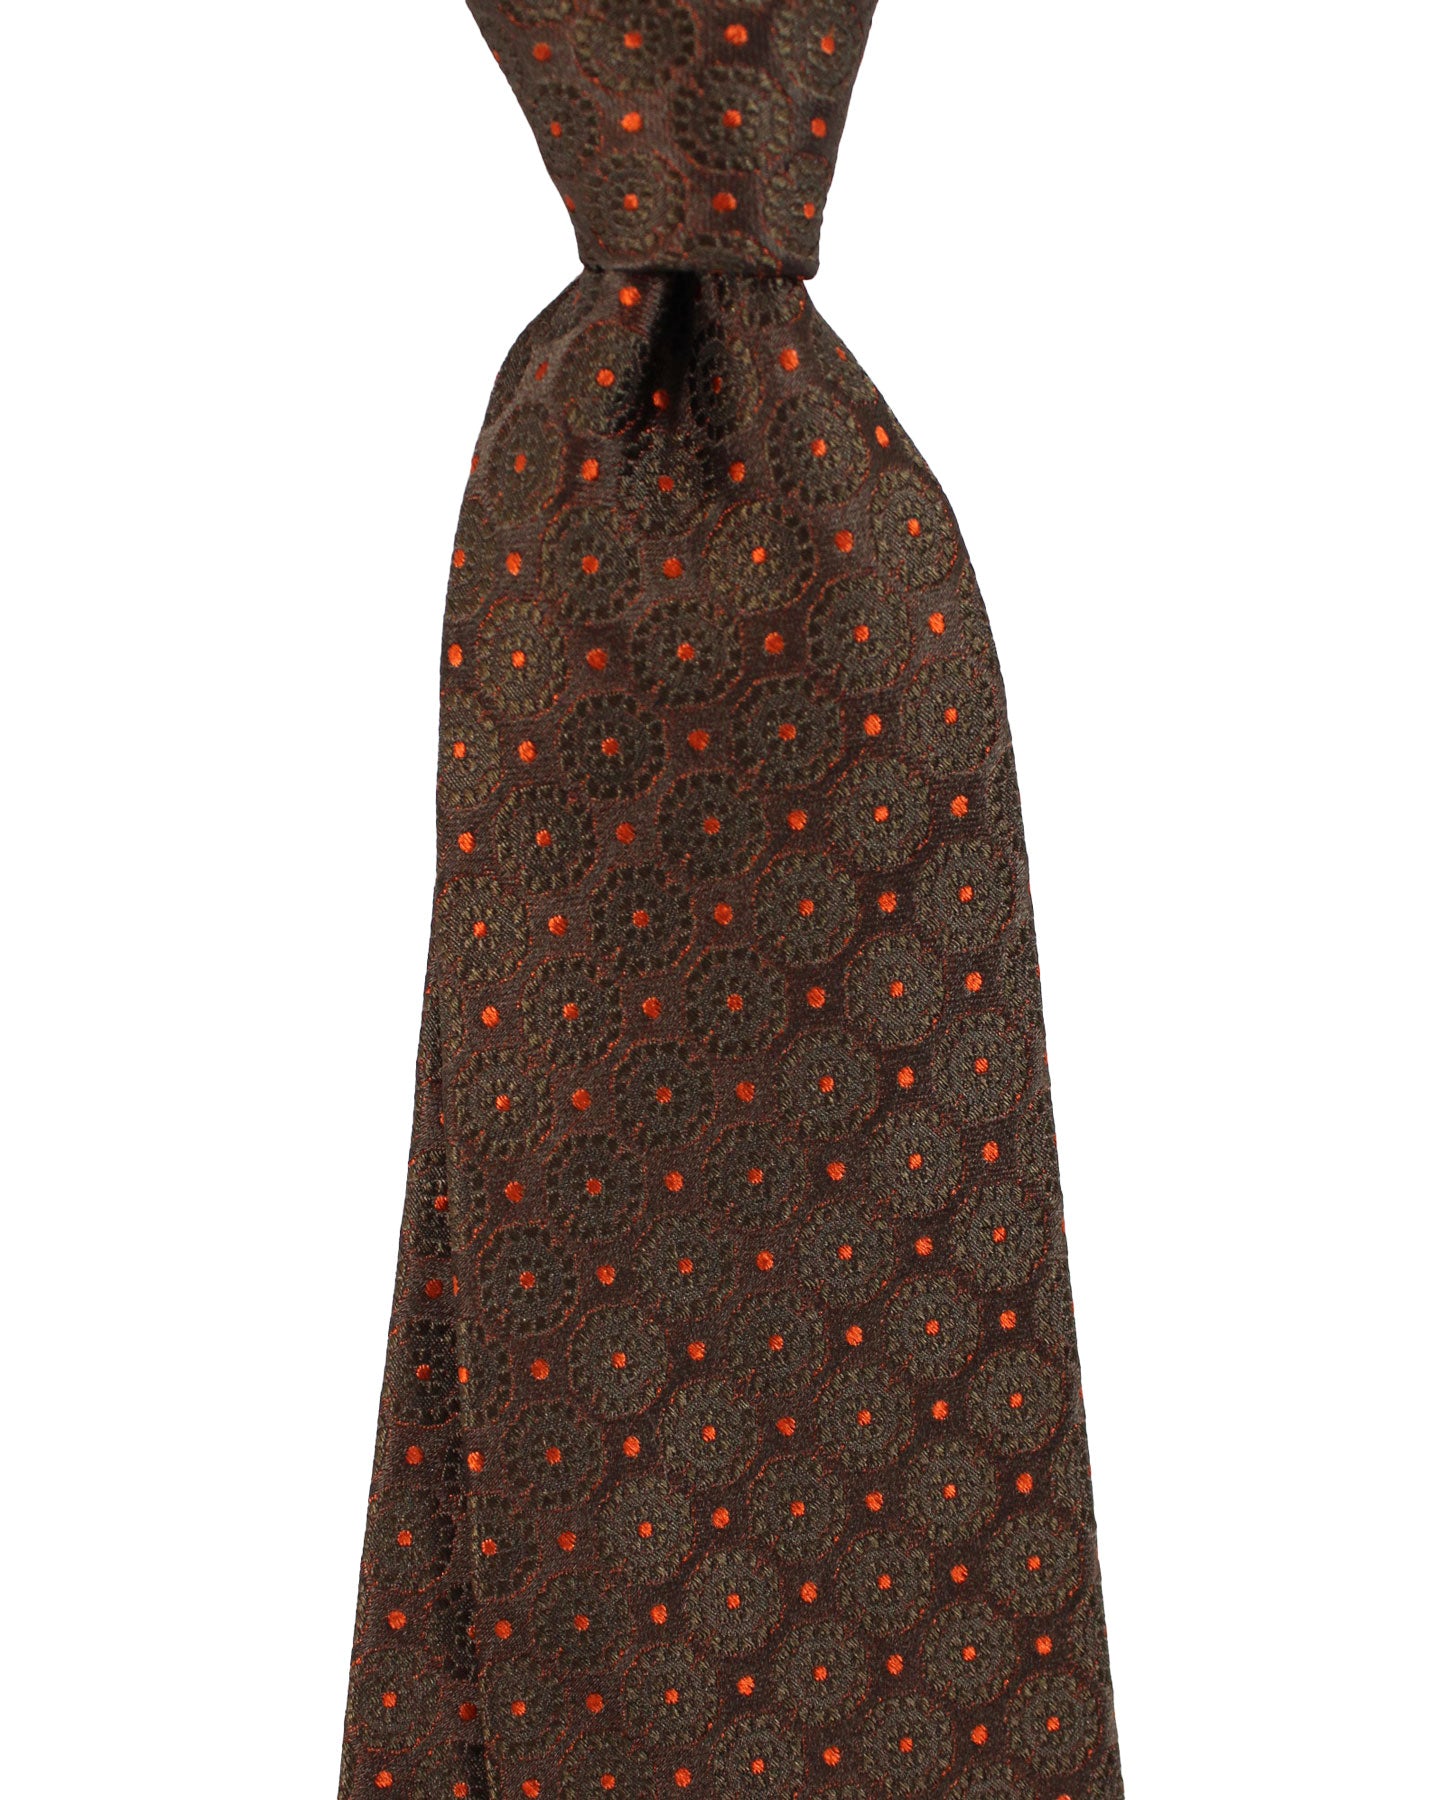 Kiton Tie Brown Orange Geometric Design - Sevenfold Necktie